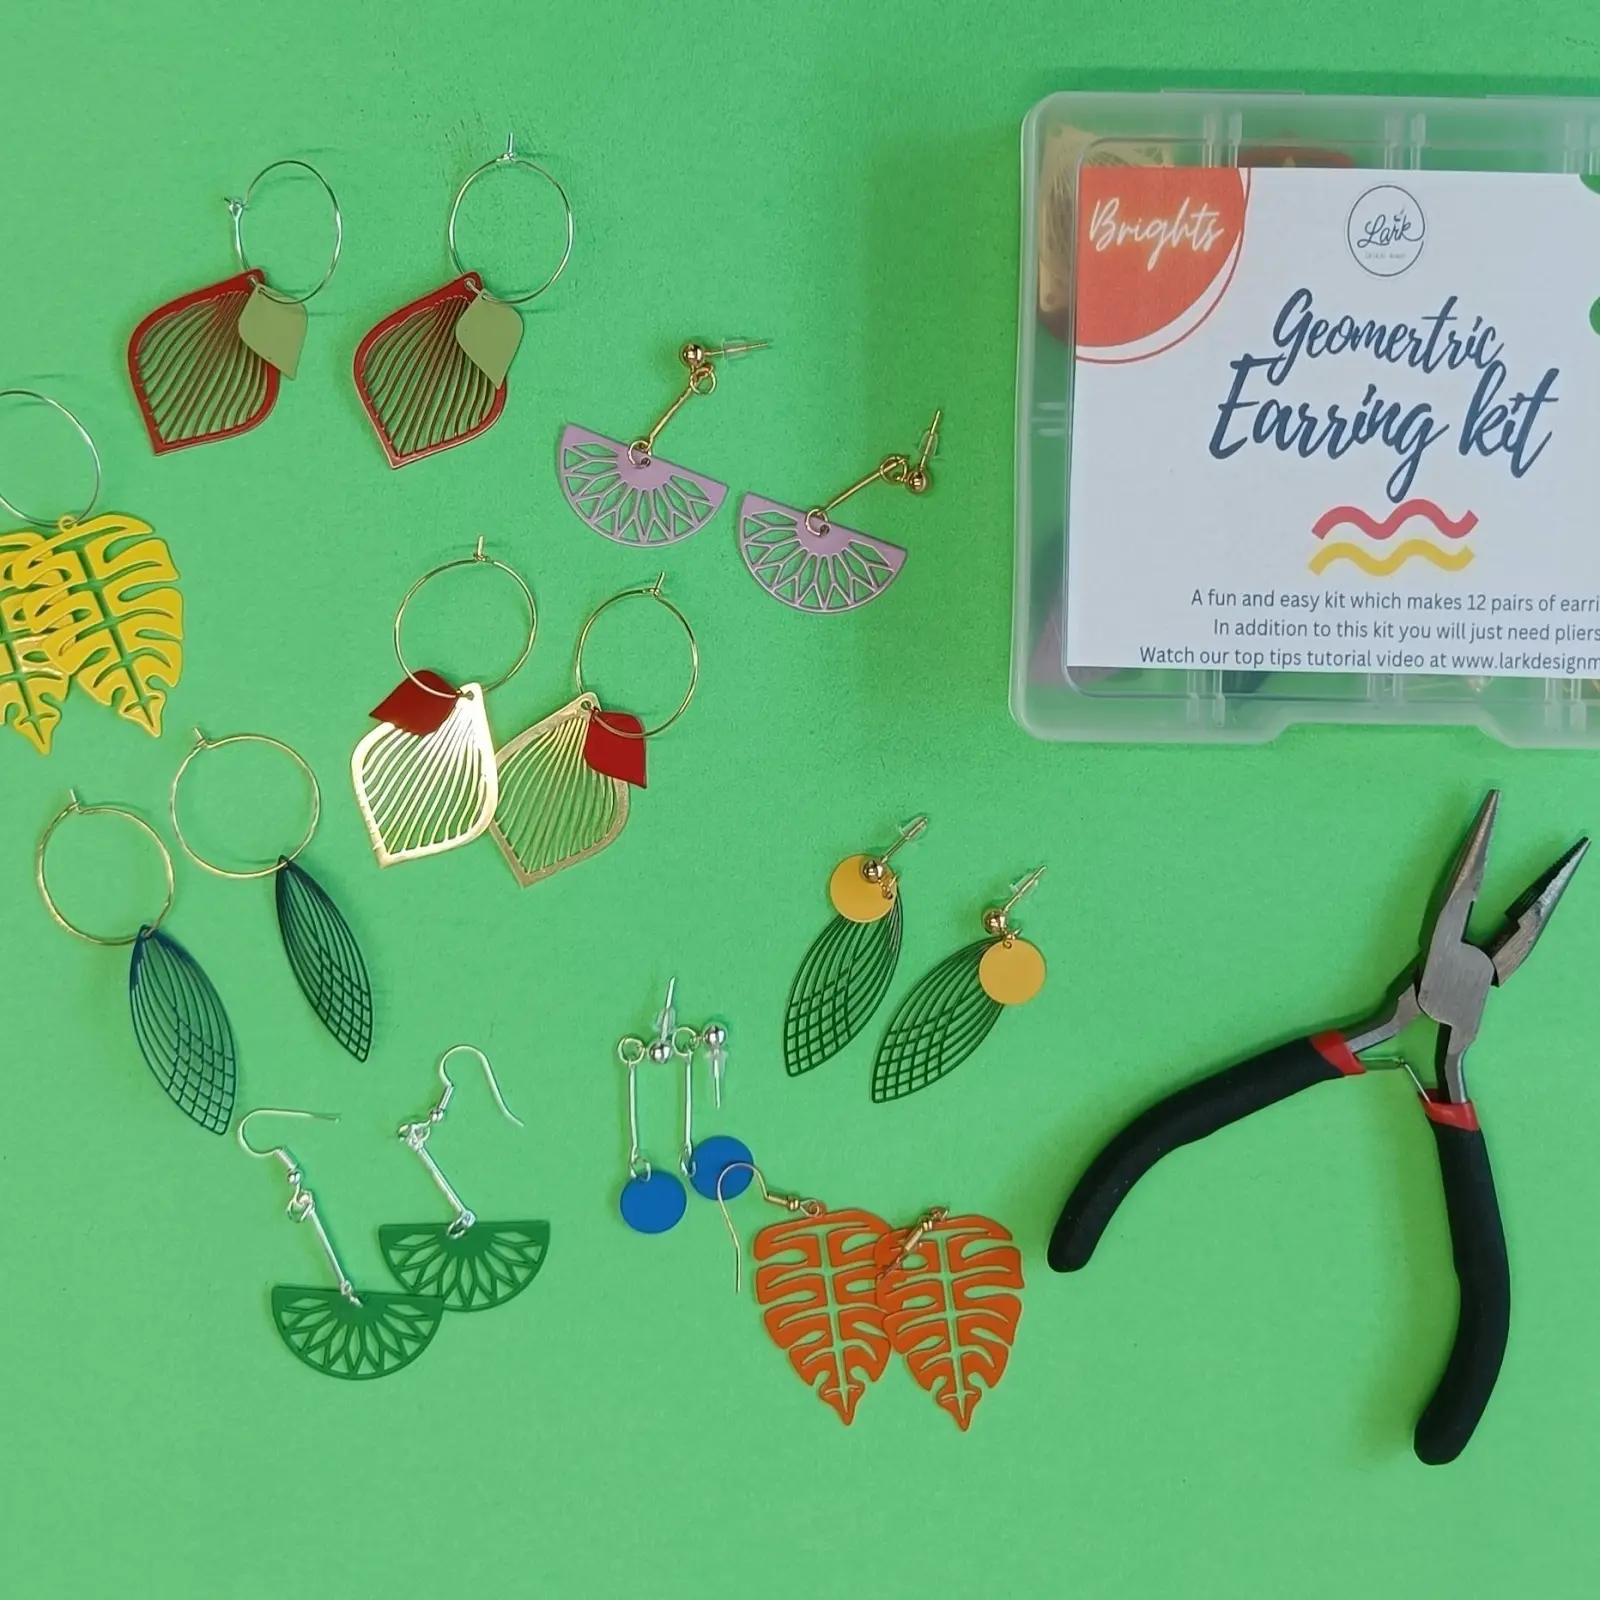 Lark design make geometric earring kit